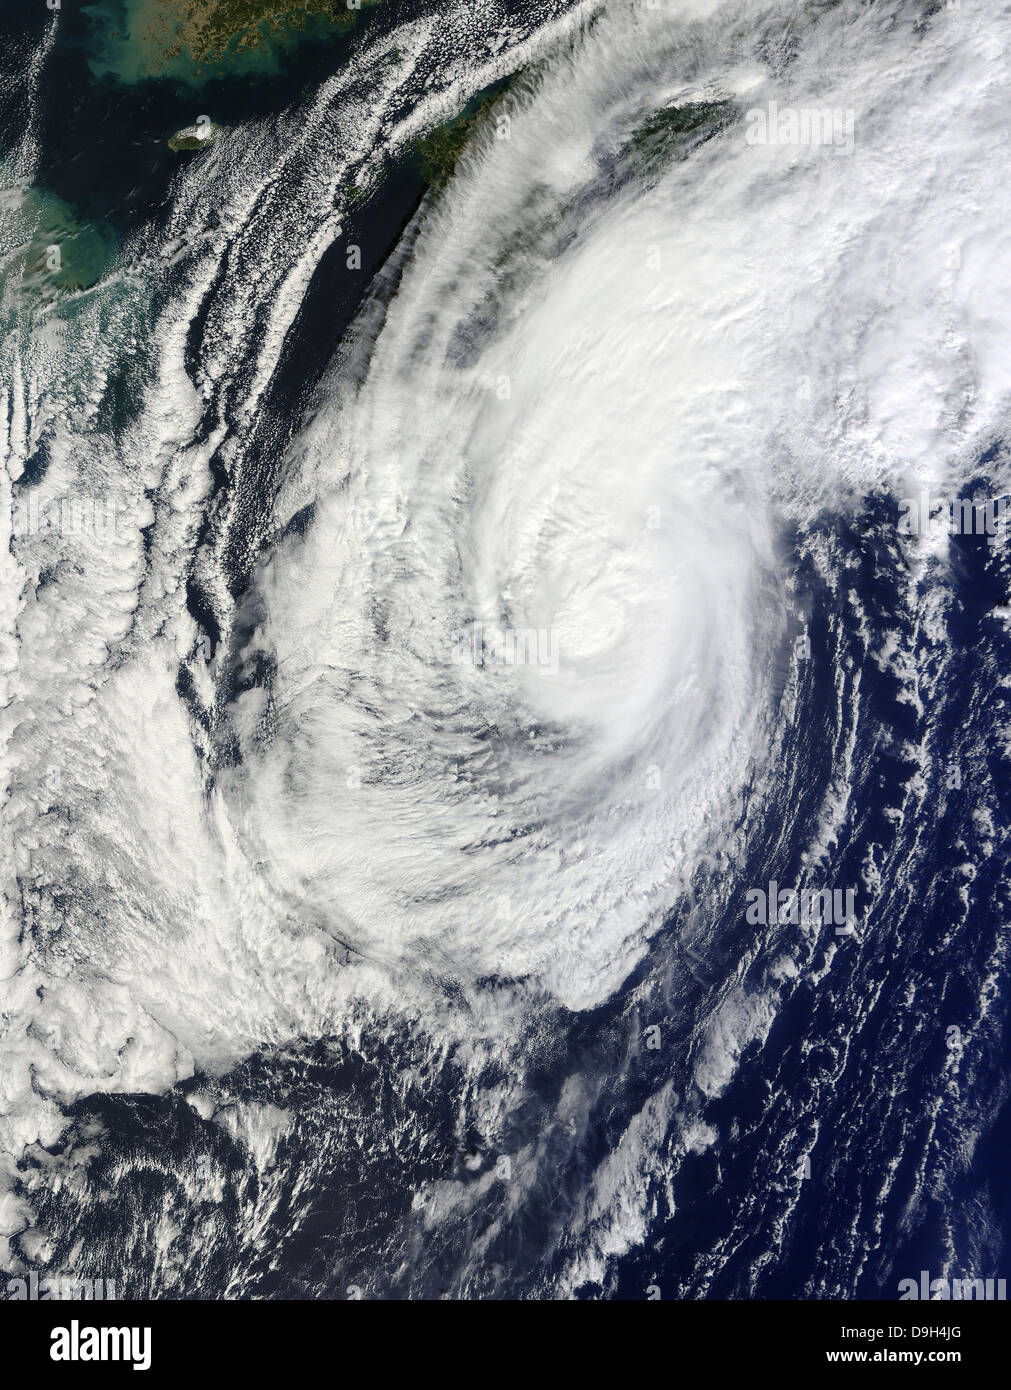 Ottobre 29, 2010 - Il tifone Chaba oltre le isole Ryukyu, Giappone. Foto Stock